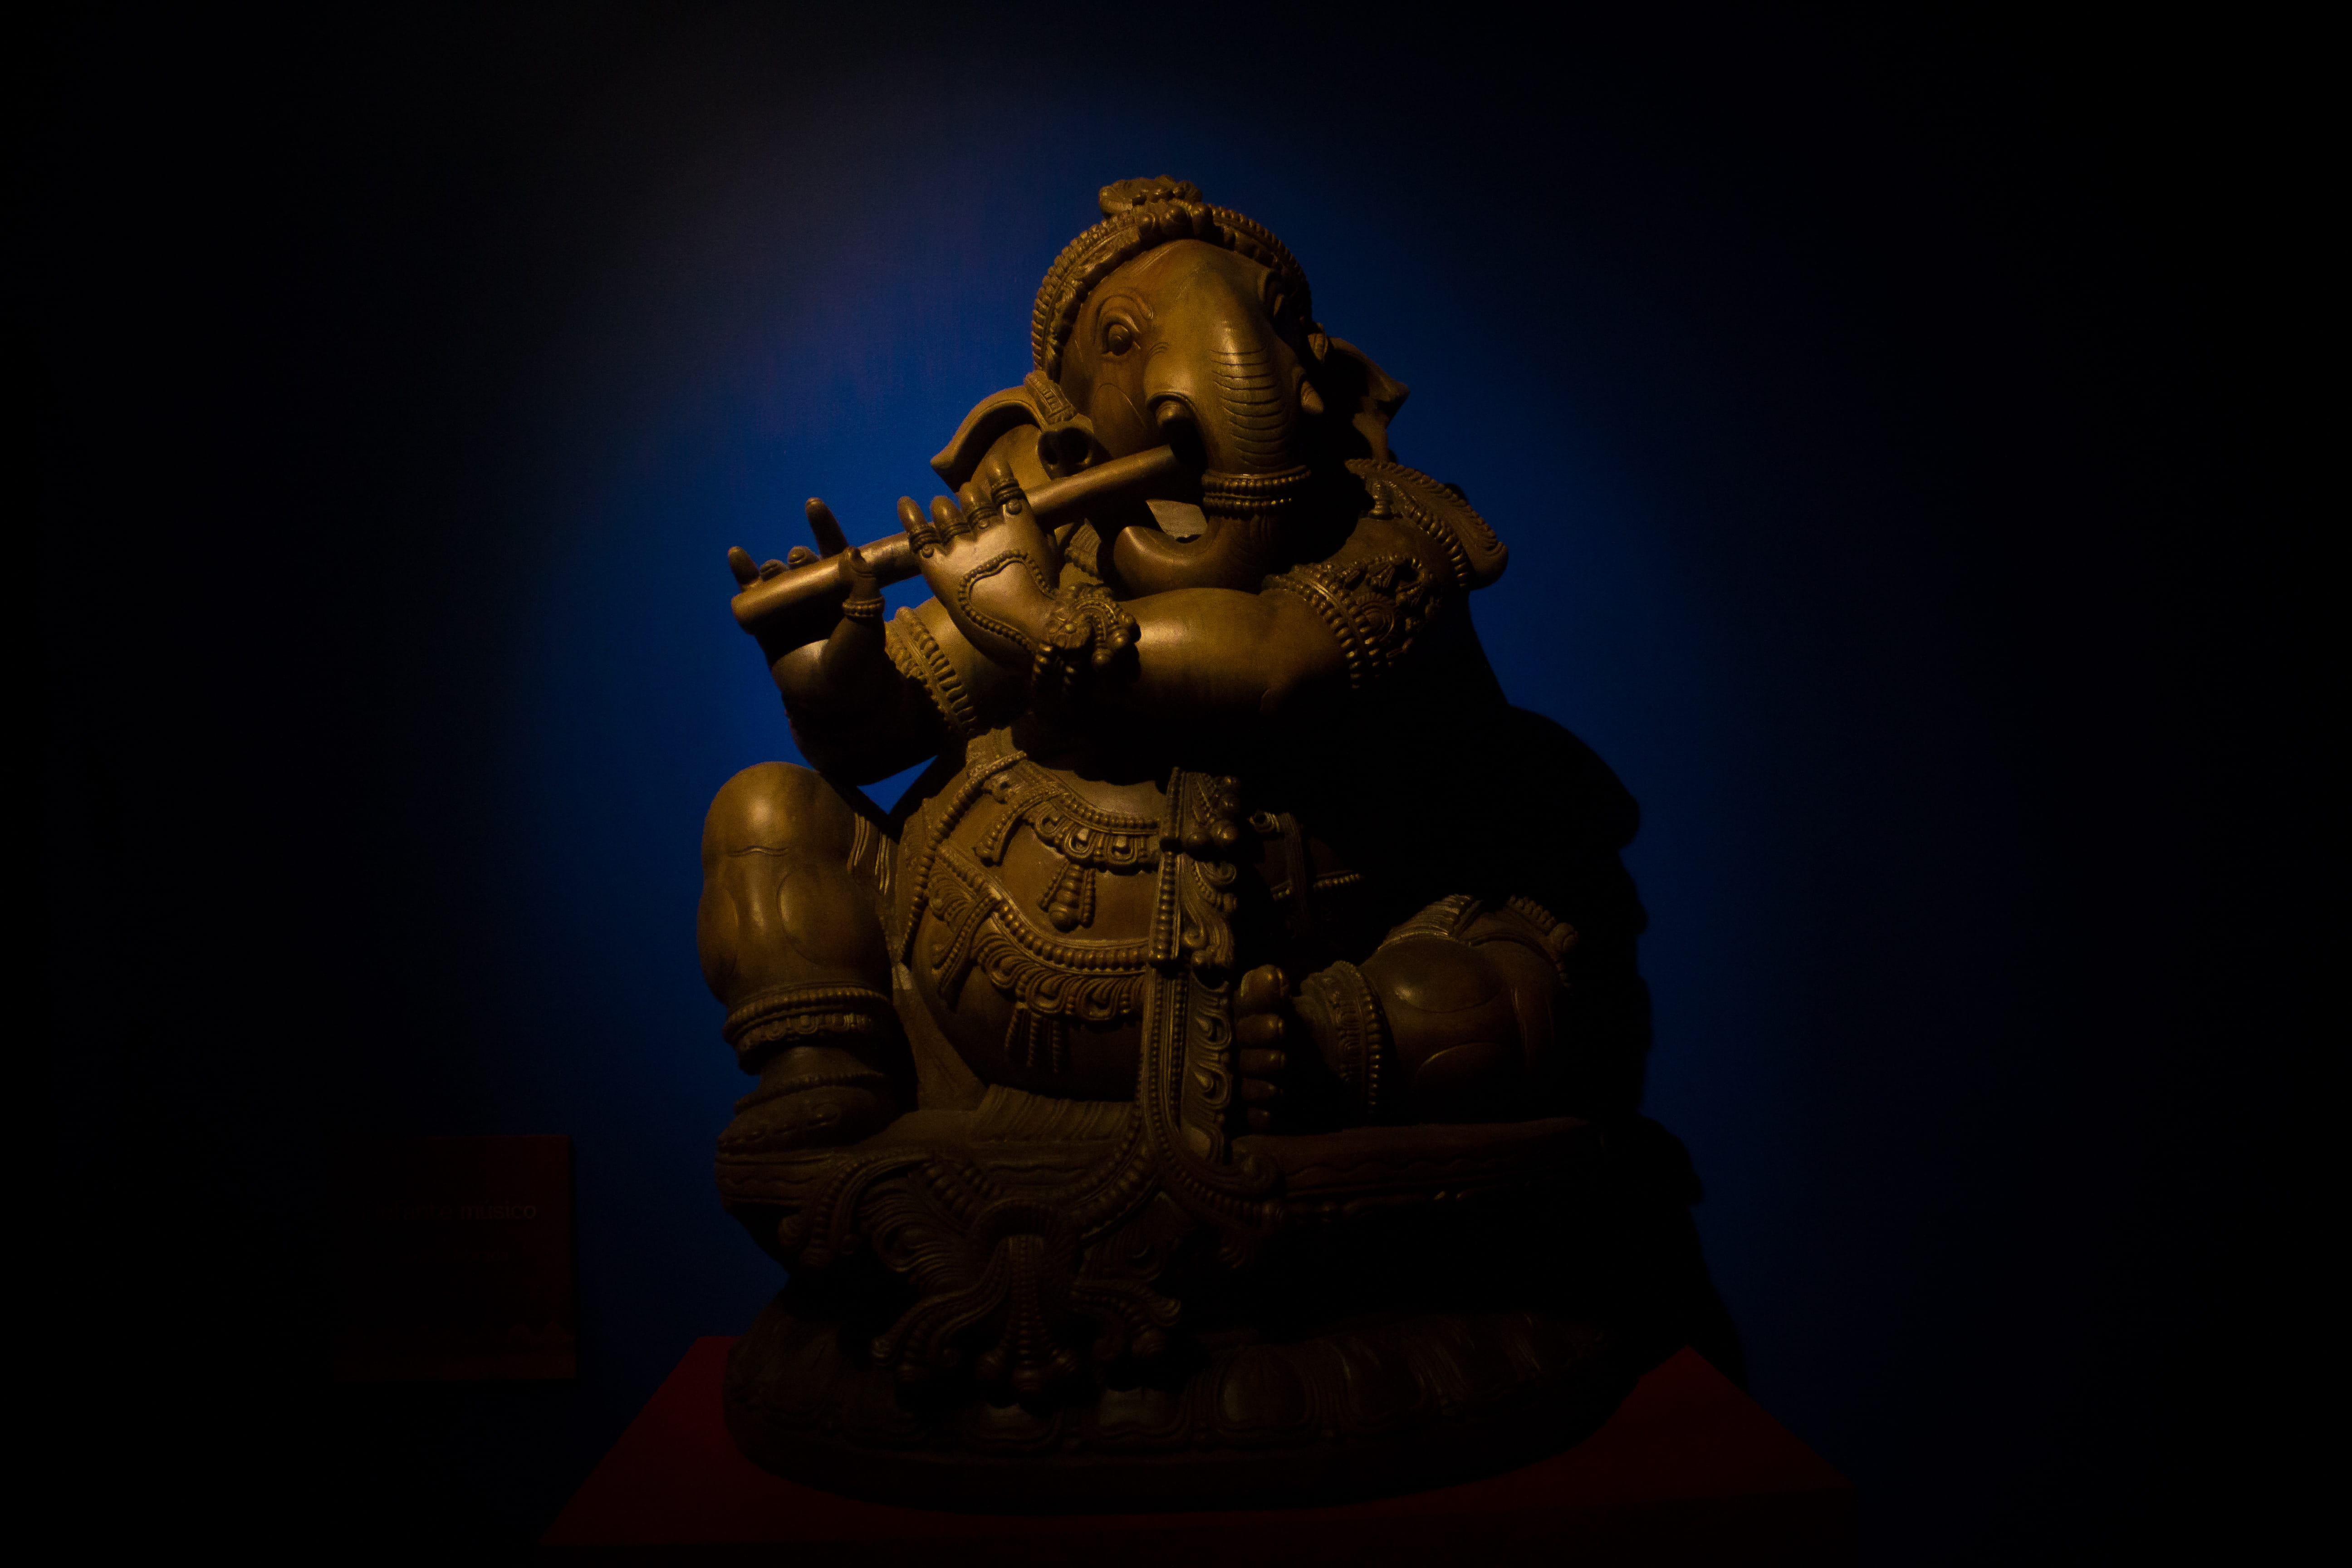 mexico, zacatecas, budismo, yainismo, dios, god, ganesha, museum